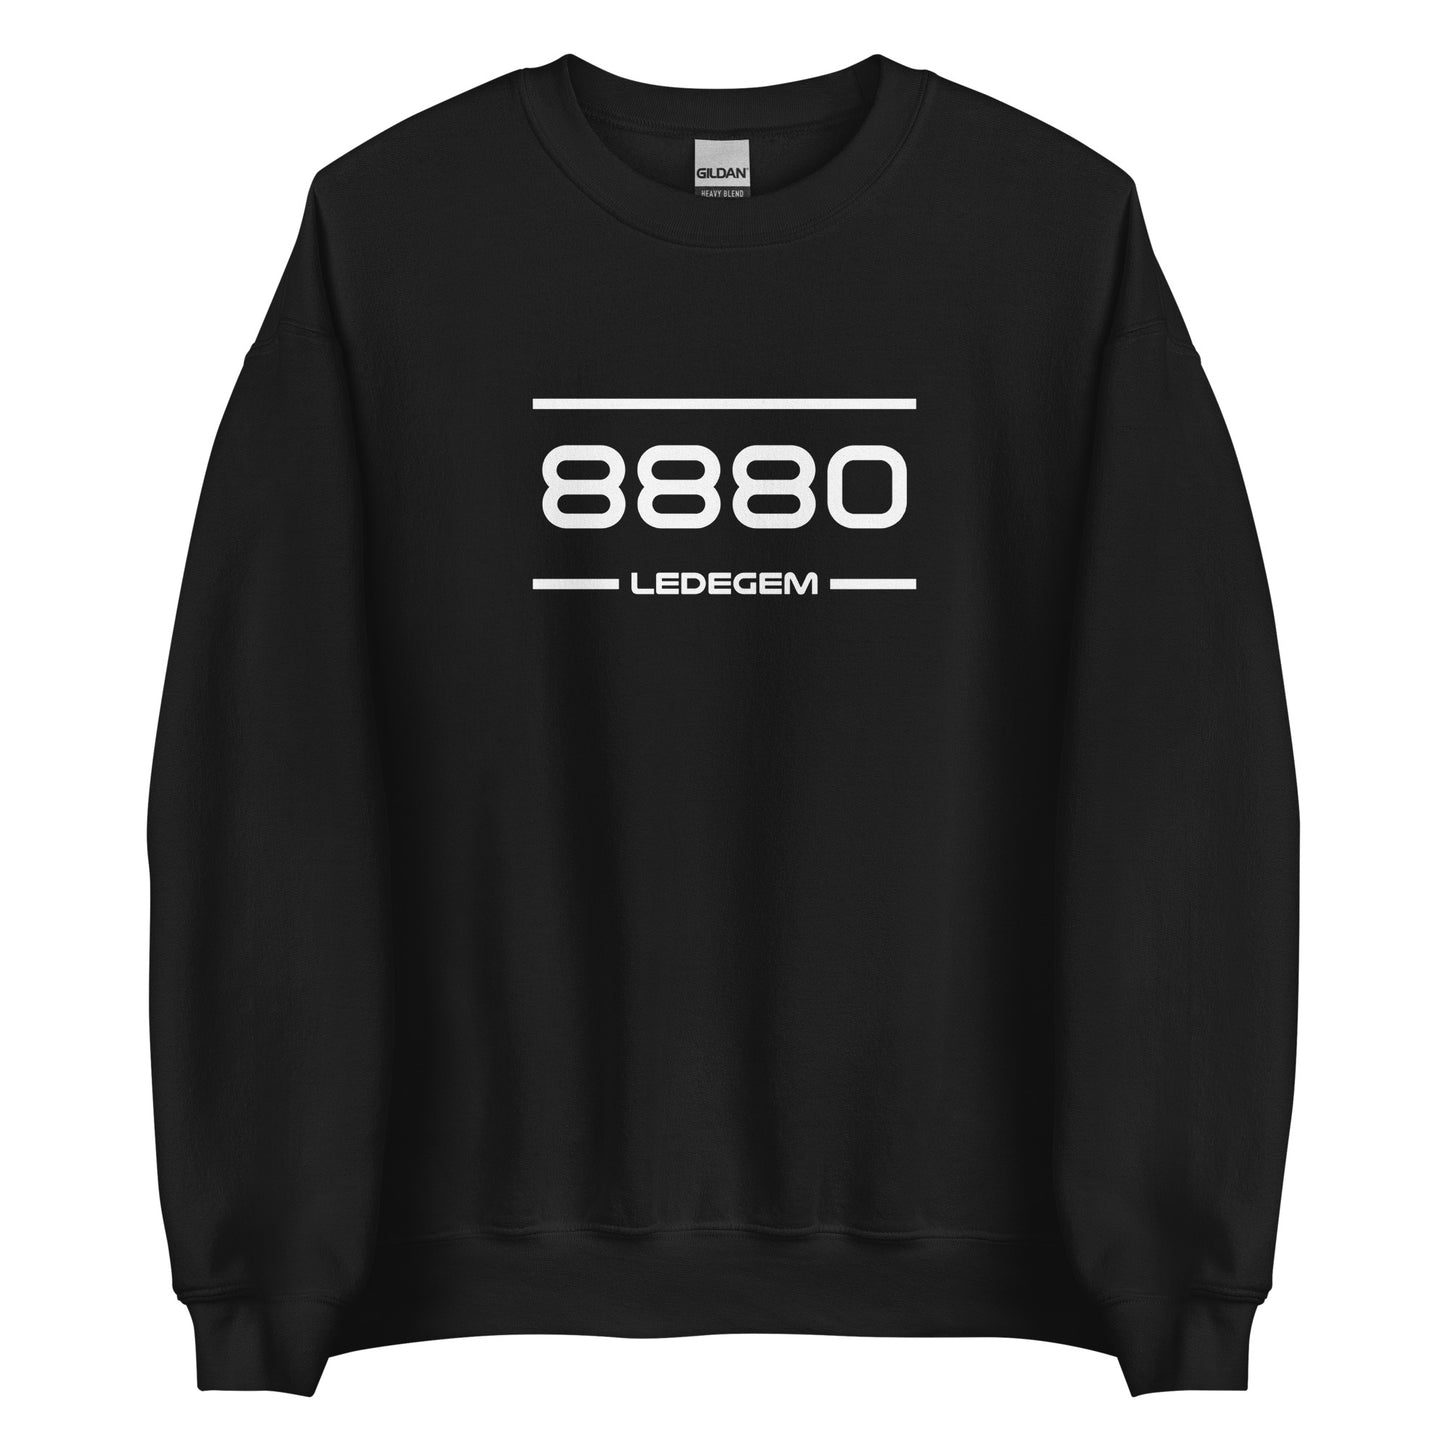 Sweater - 8880 - Ledegem (M/V)